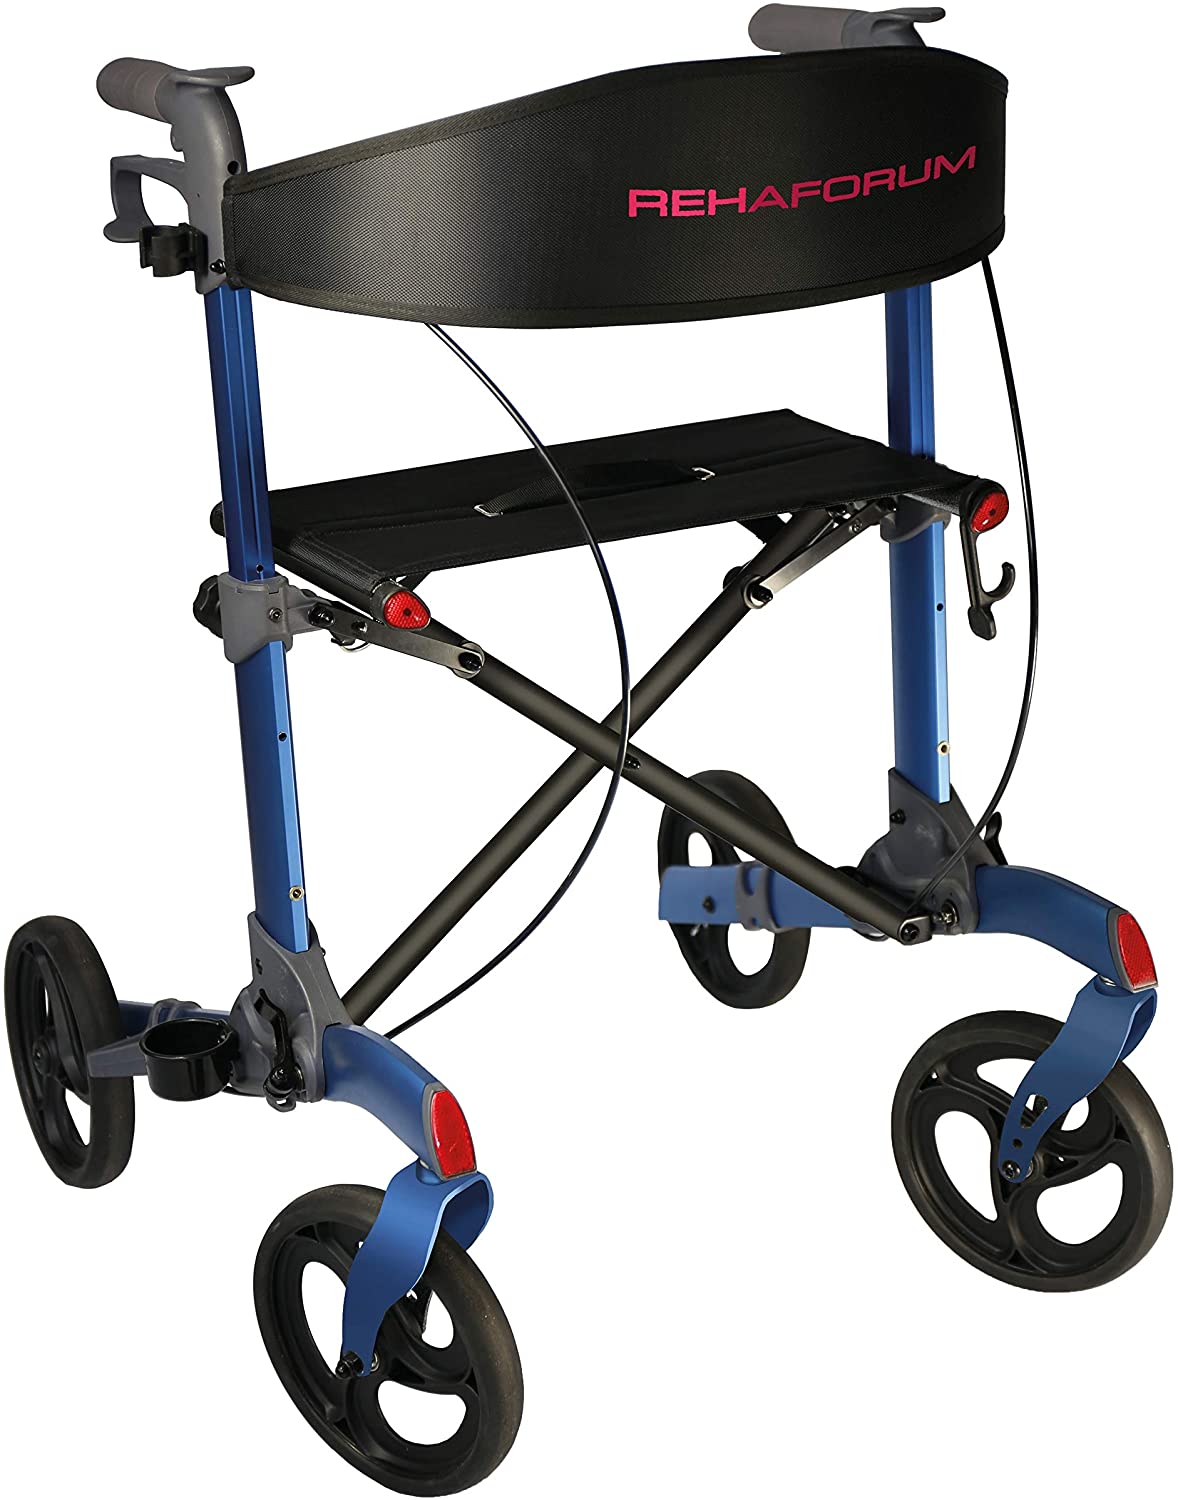 Rehaforum Medical Rehaforum Actimo Premium Lightweight Rollator Blue